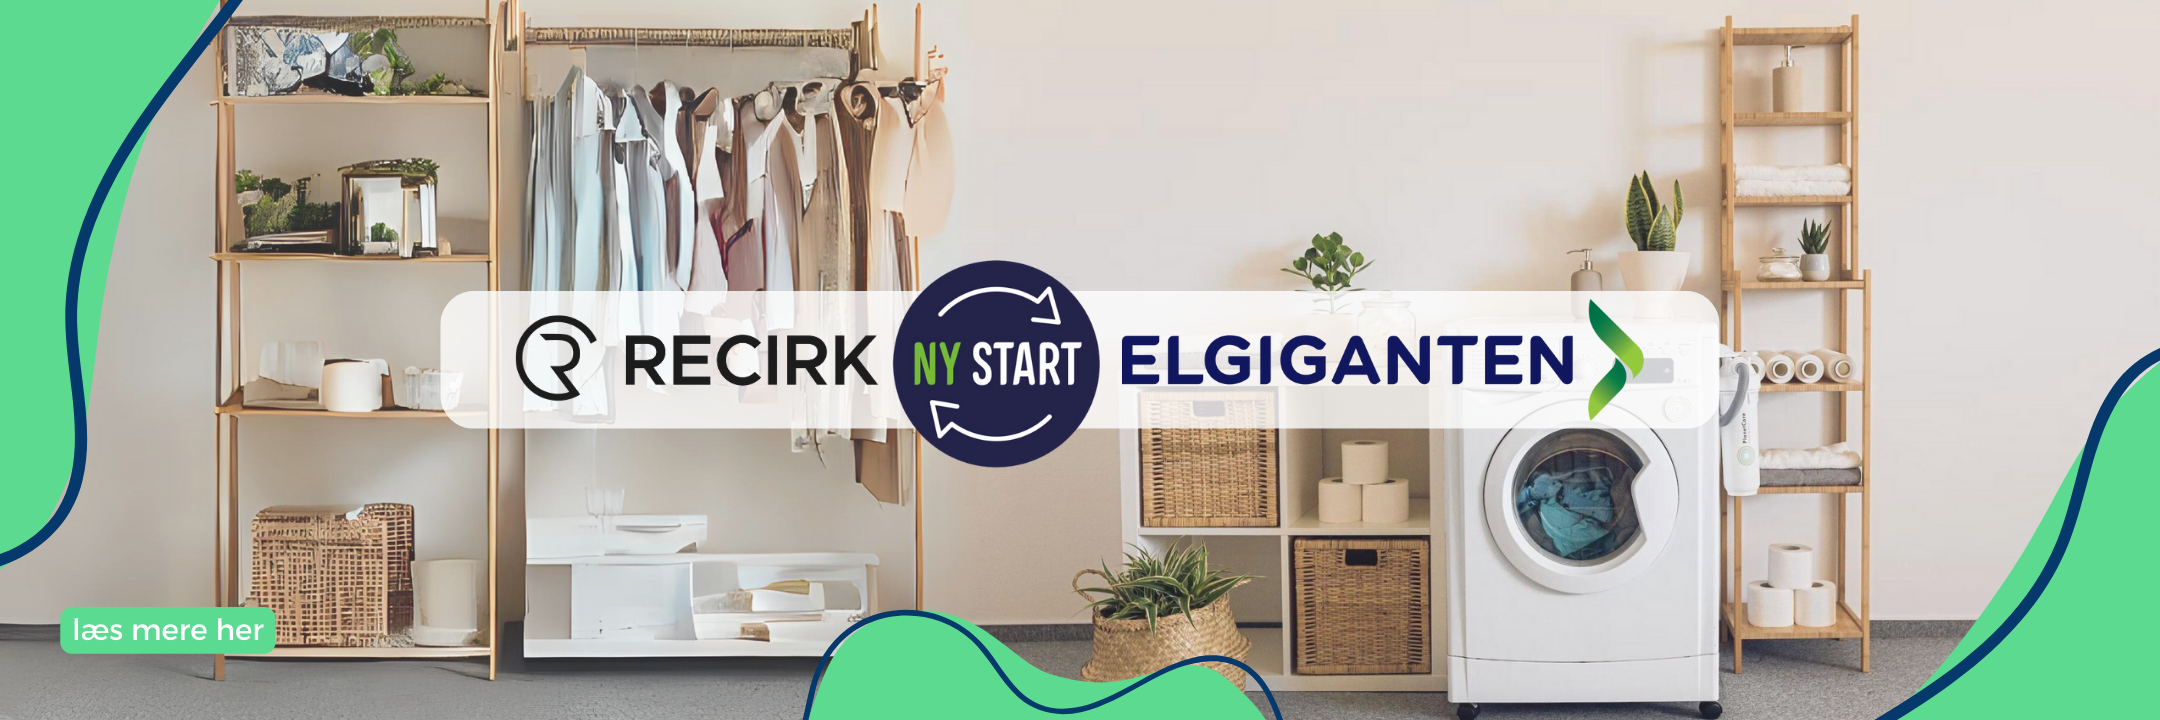 Recirk og Elgiganten lancerer salg af brugte hårde-hvidevarer.